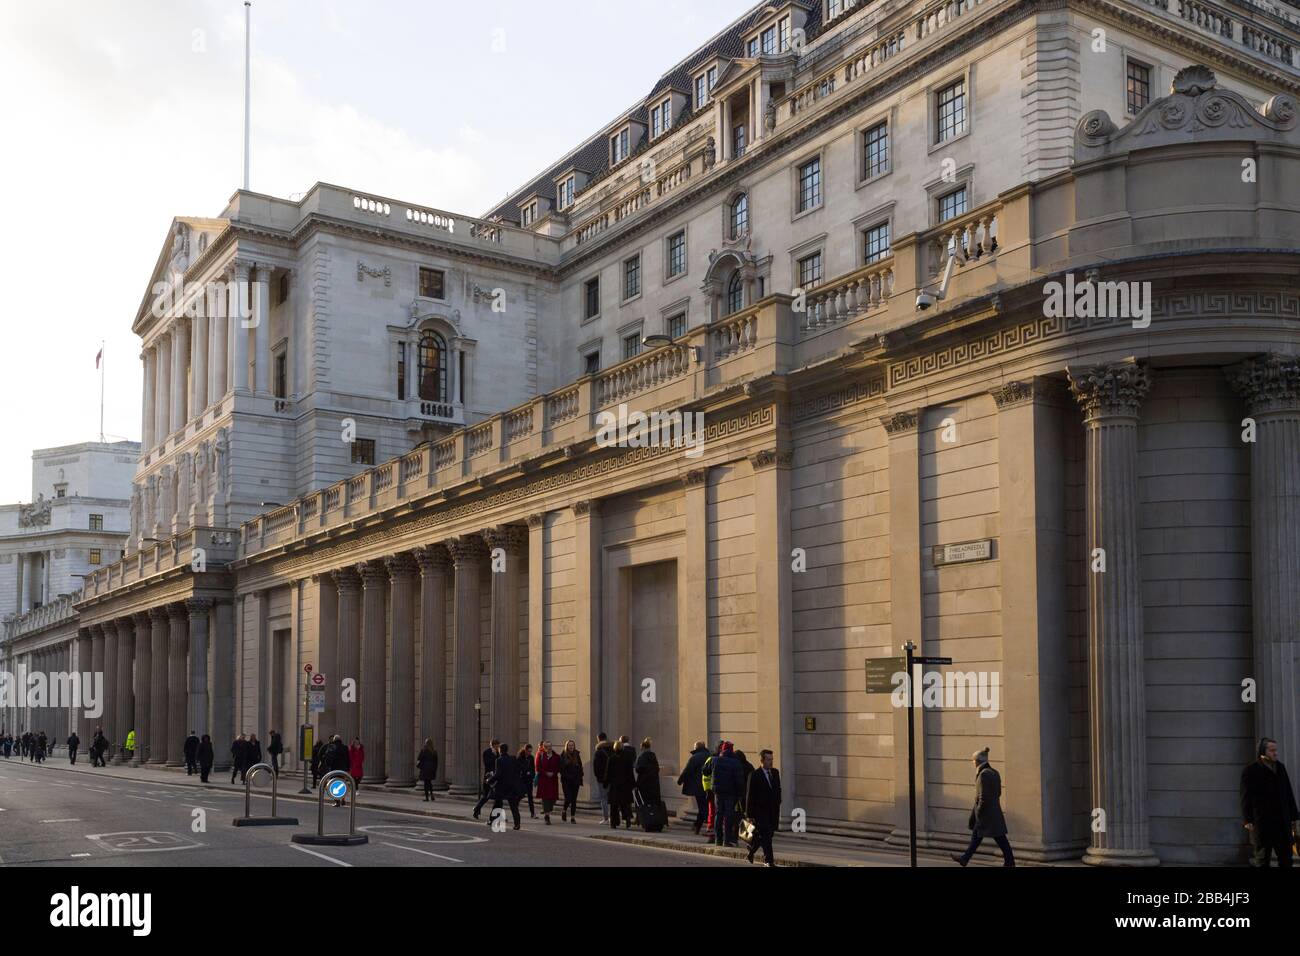 Die Bank of England ist die Zentralbank des Vereinigten Königreichs. Manchmal auch als "Old Lady of Threadneedle Street" bekannt. Threadneedle Street, London, Großbritannien. T Stockfoto